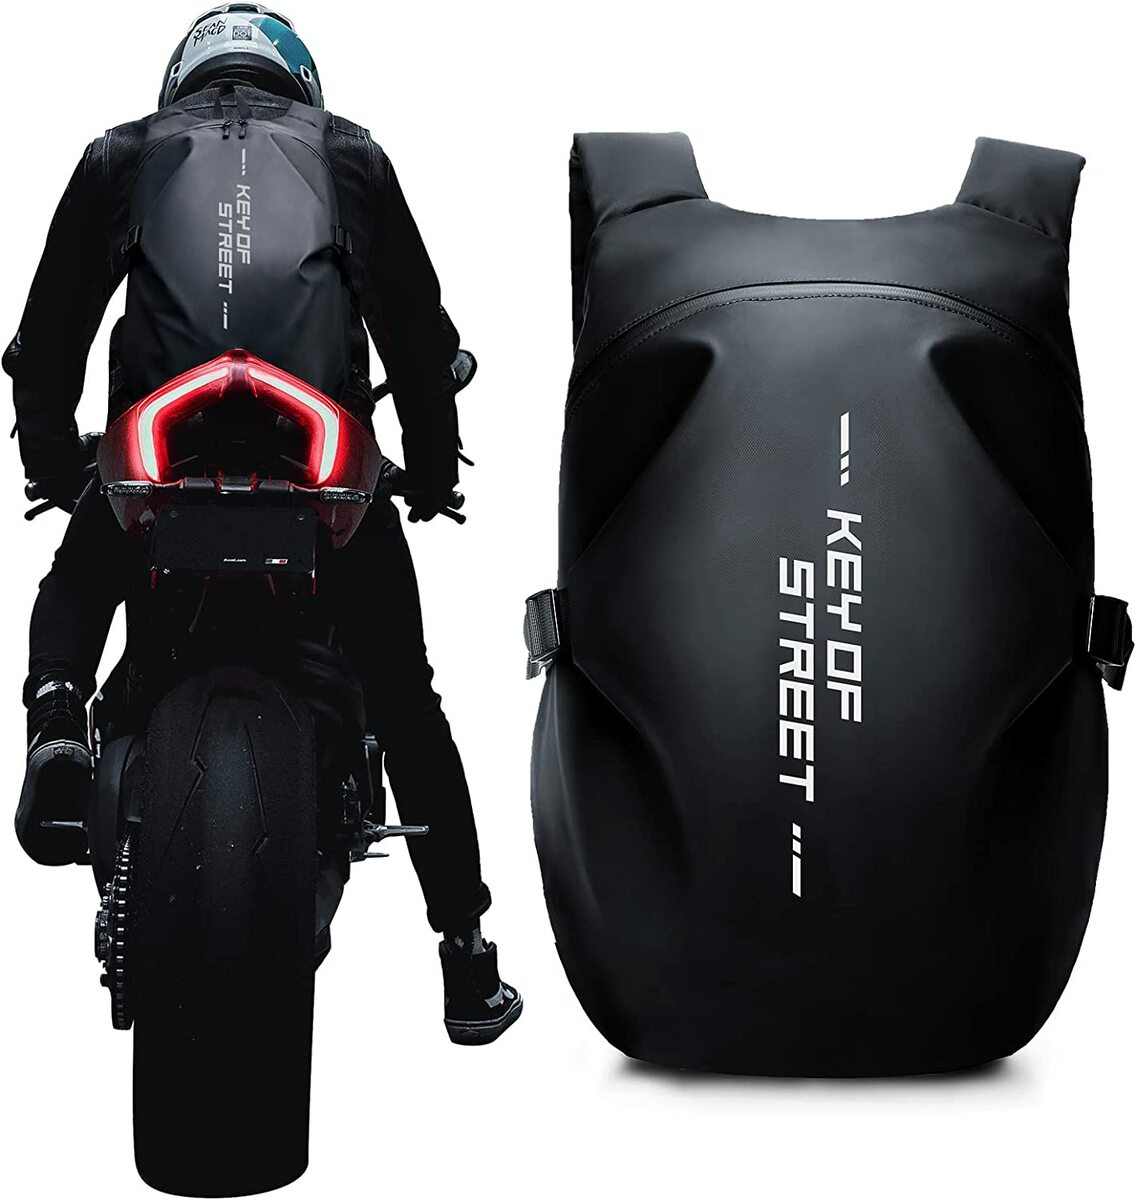 ヘルメットバッグ メンズ バイクリュック 防水 バックパック ヘルメットケース リュック 大容量トラベルバッグ サイクリング 登山 スポーツ 自転車 多機能 キャンプ リュック 50L 40L